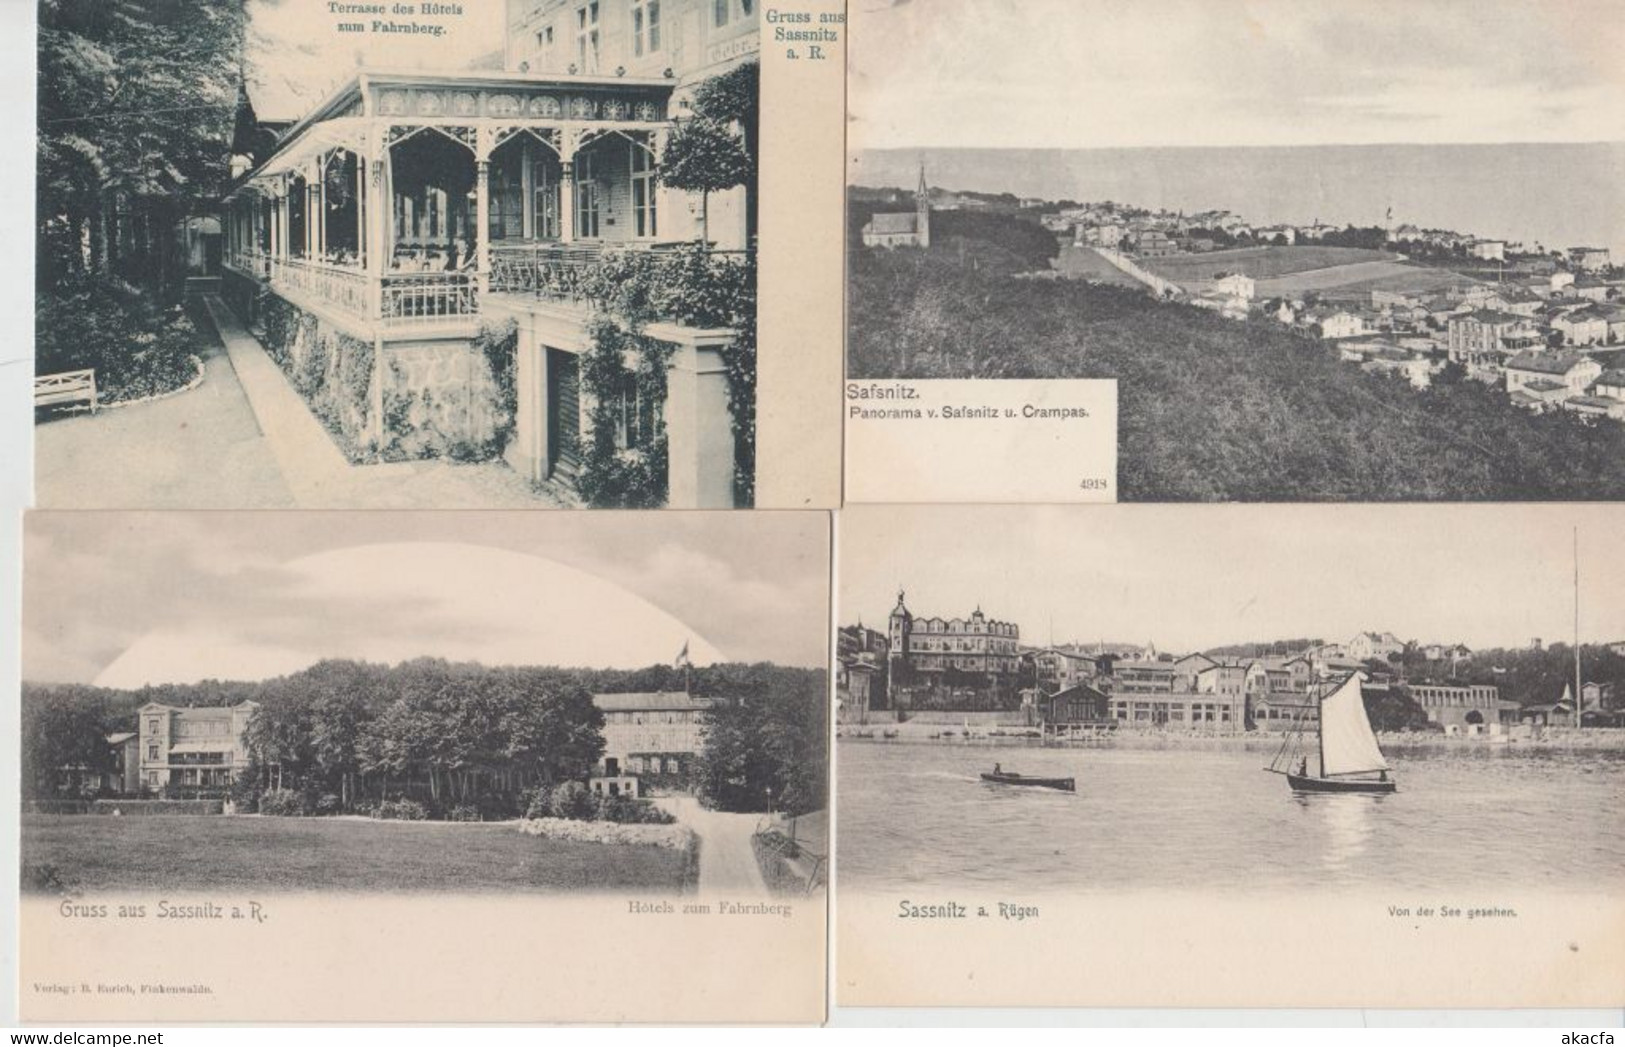 RÜGEN Island GERMANY 22 Vintage Bettter Postcards Pre-1920 (L5164) - Sammlungen & Sammellose